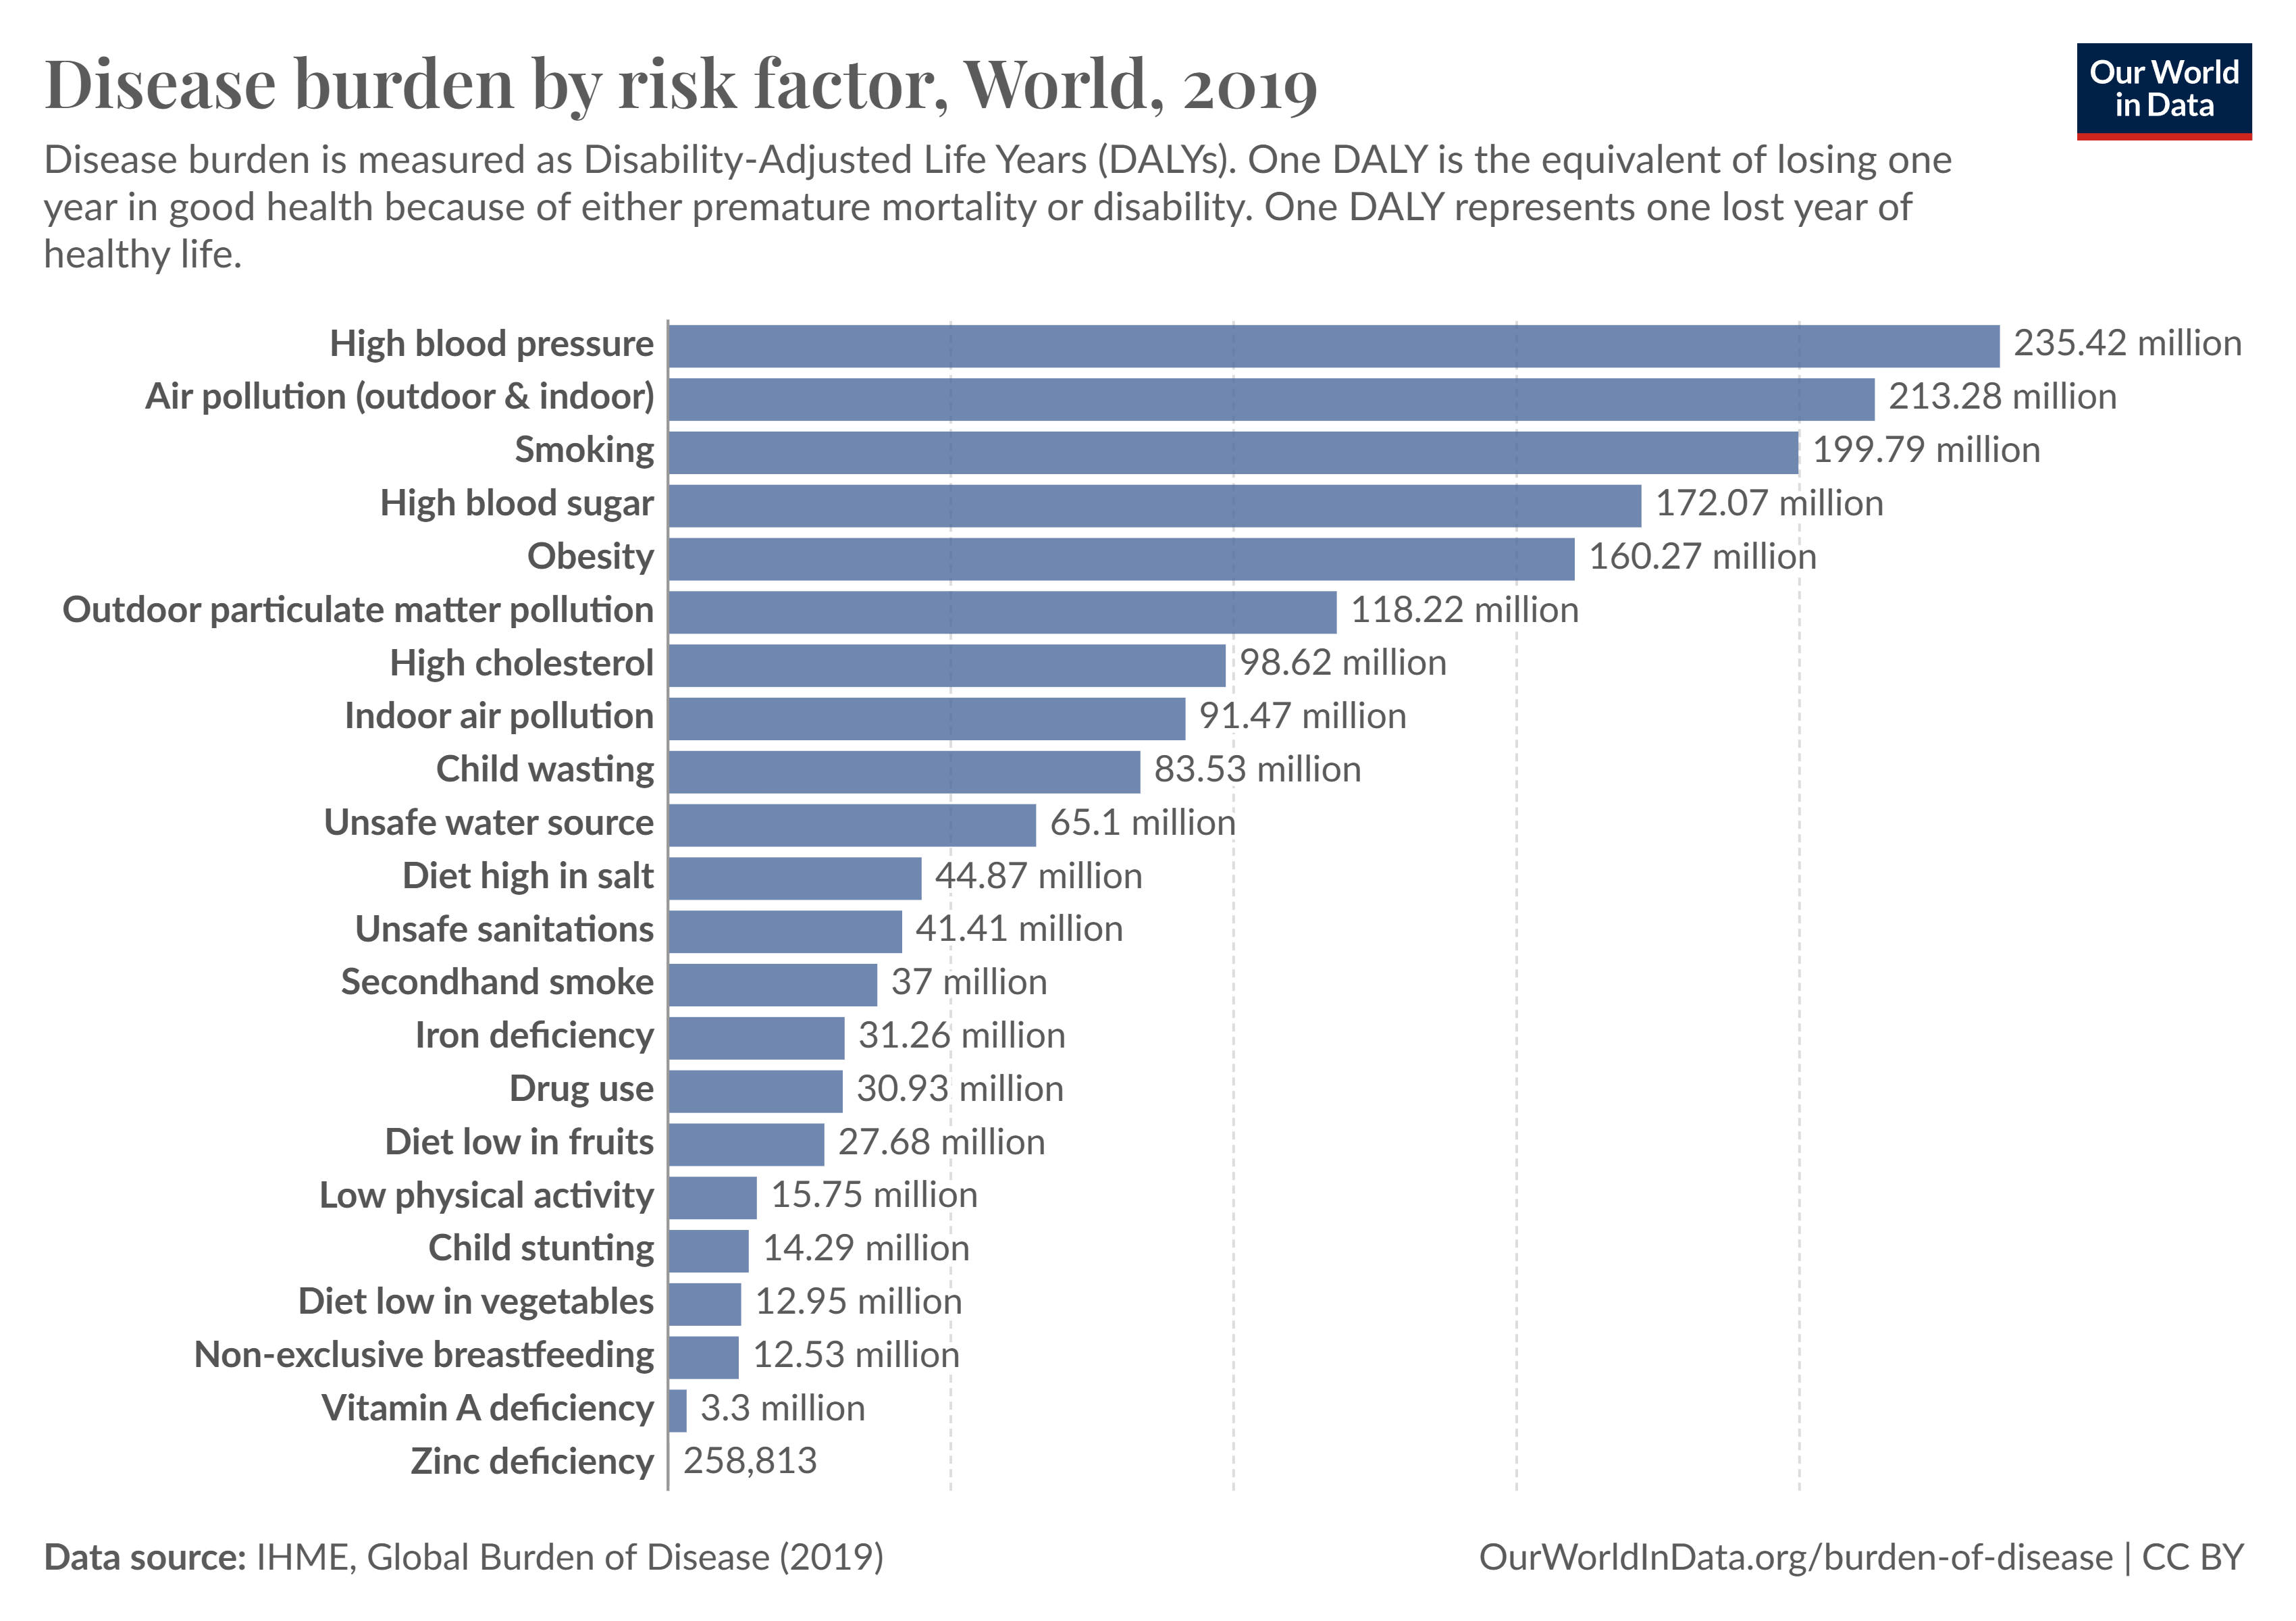 Disease Burden of Risk Factors